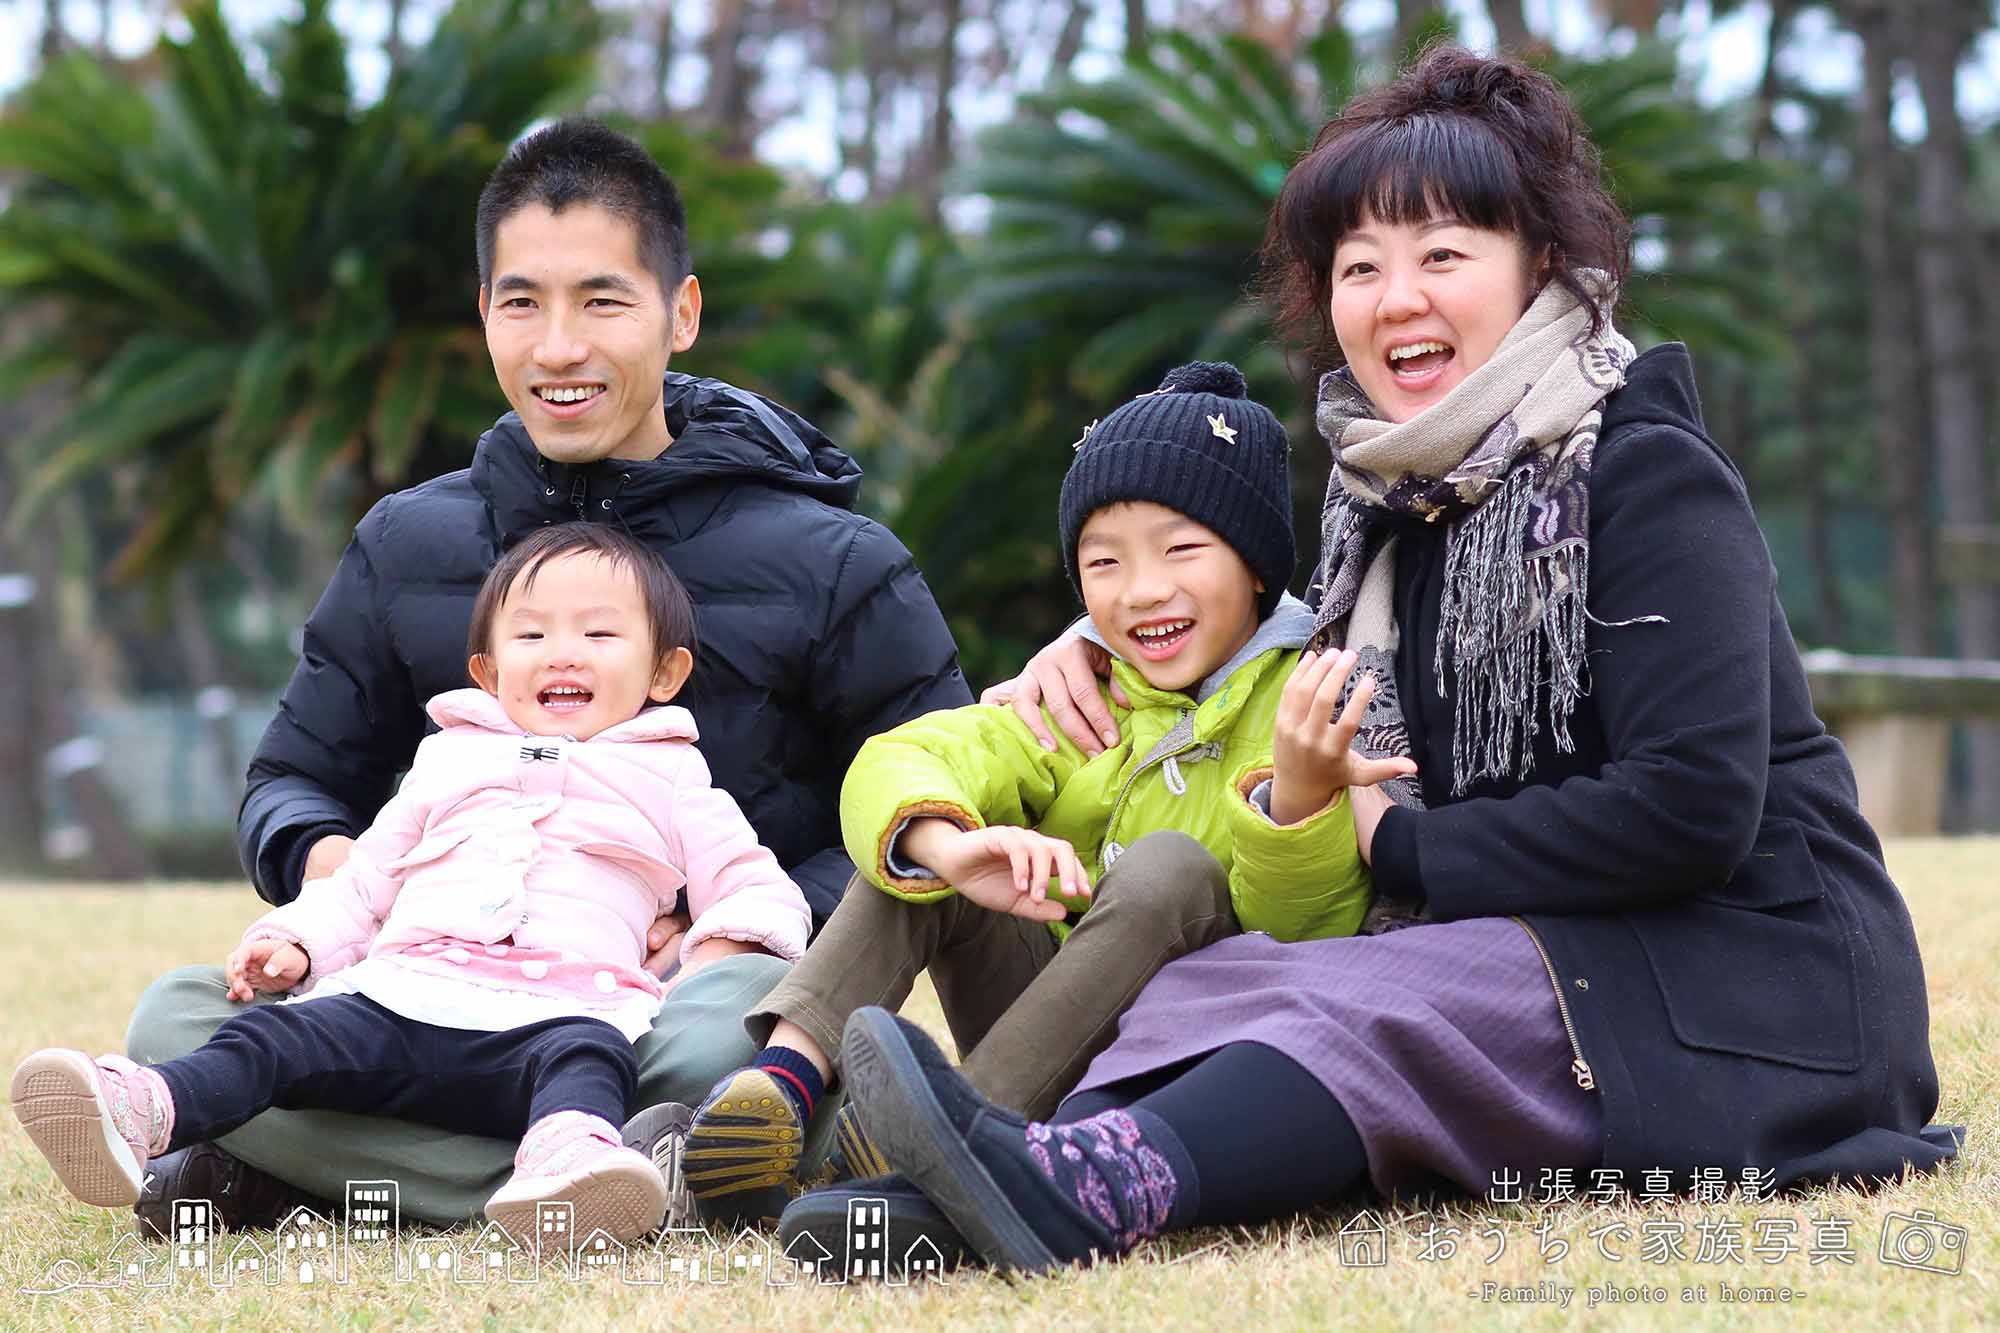 出張写真専門のおうちで家族写真の公園での家族写真